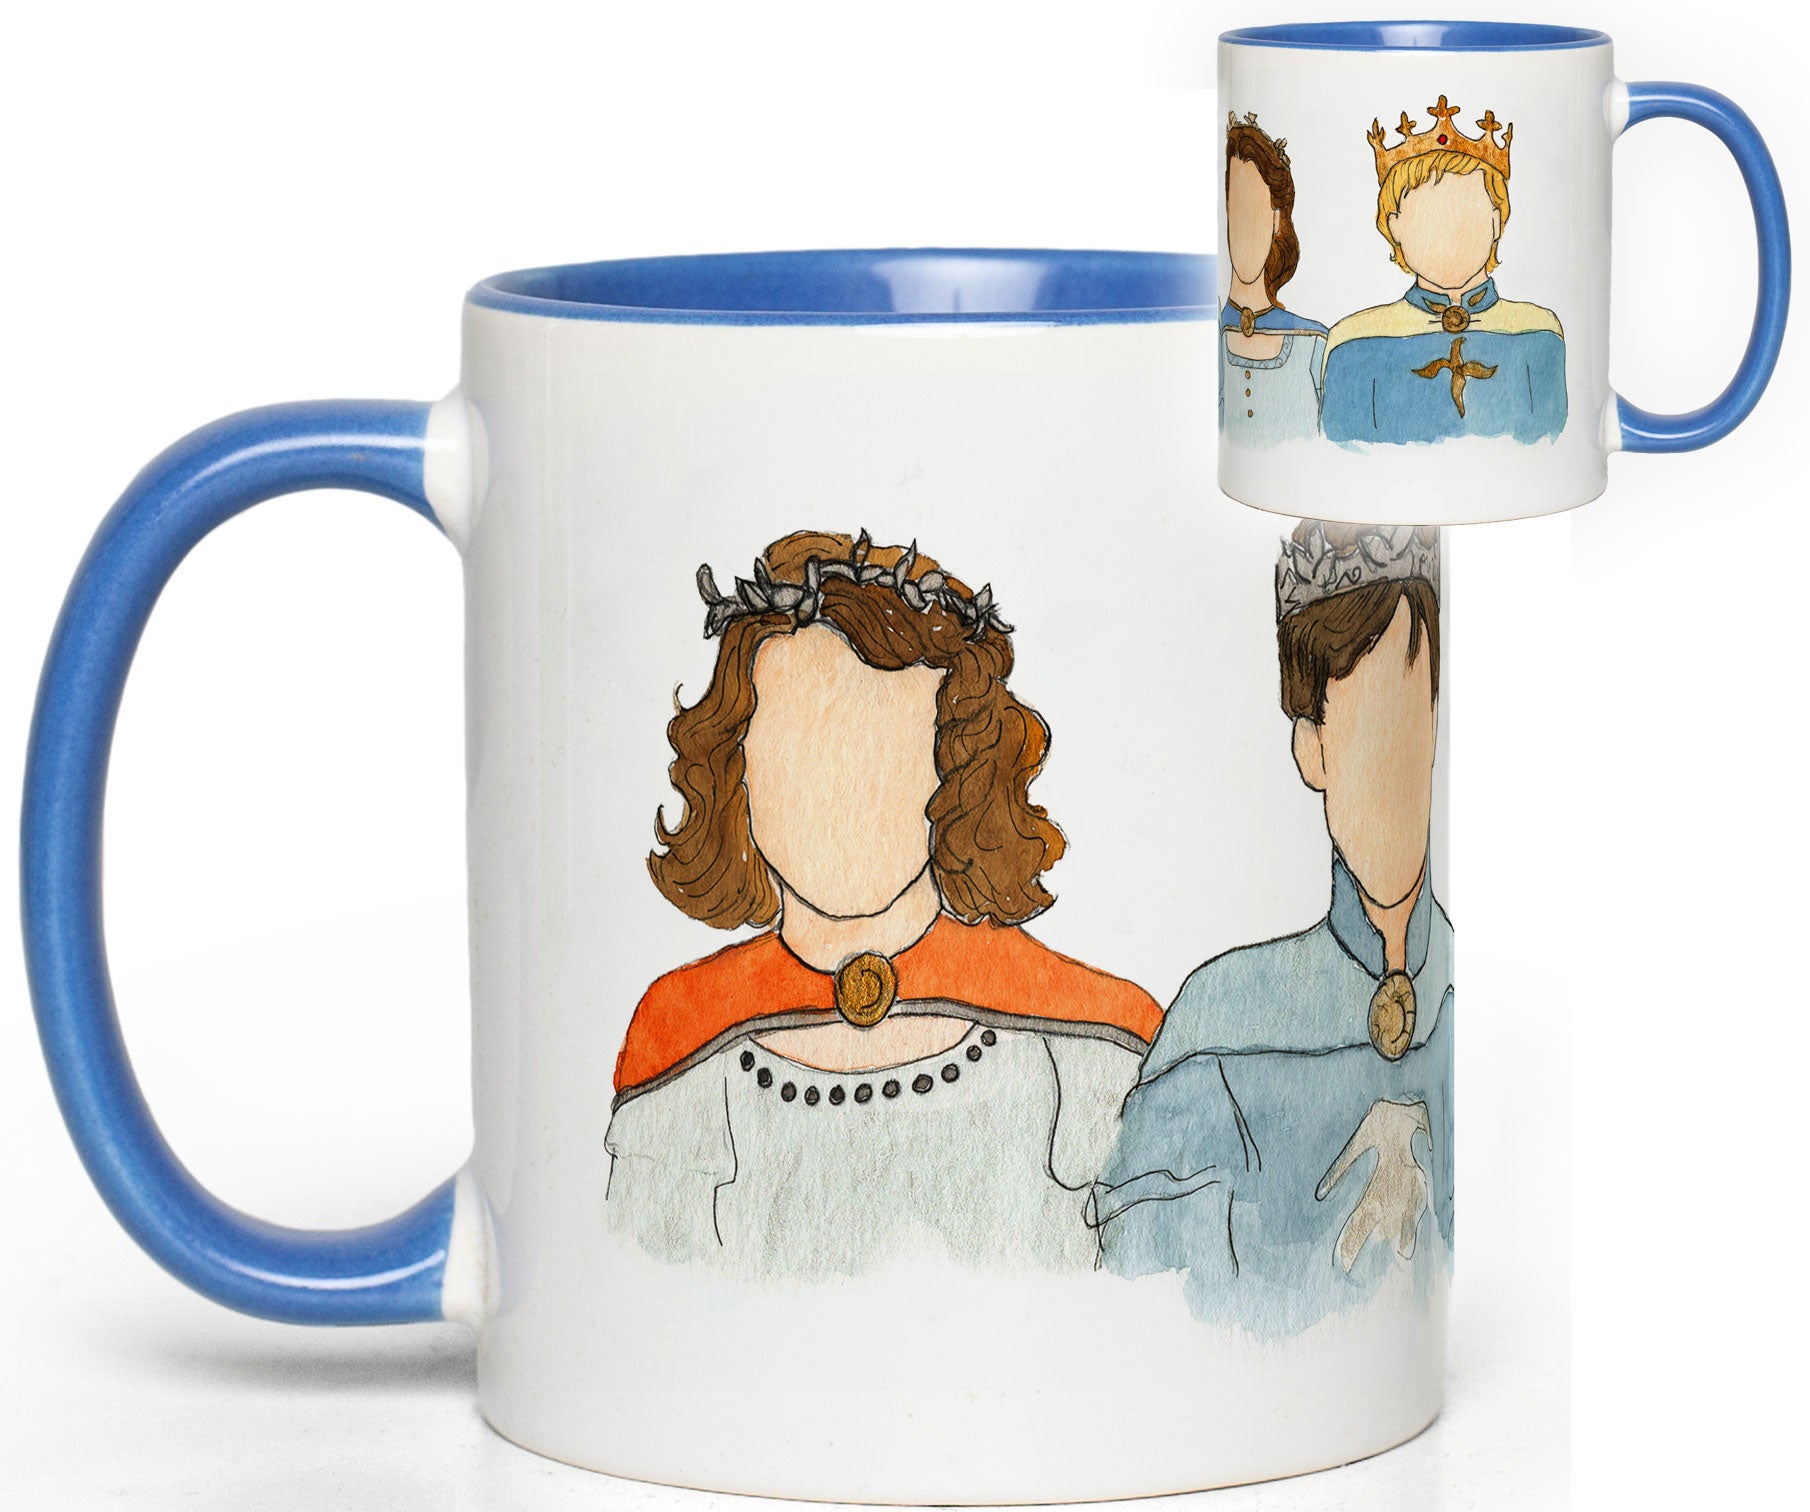 Kings & Queens Mug (C. S. Lewis)